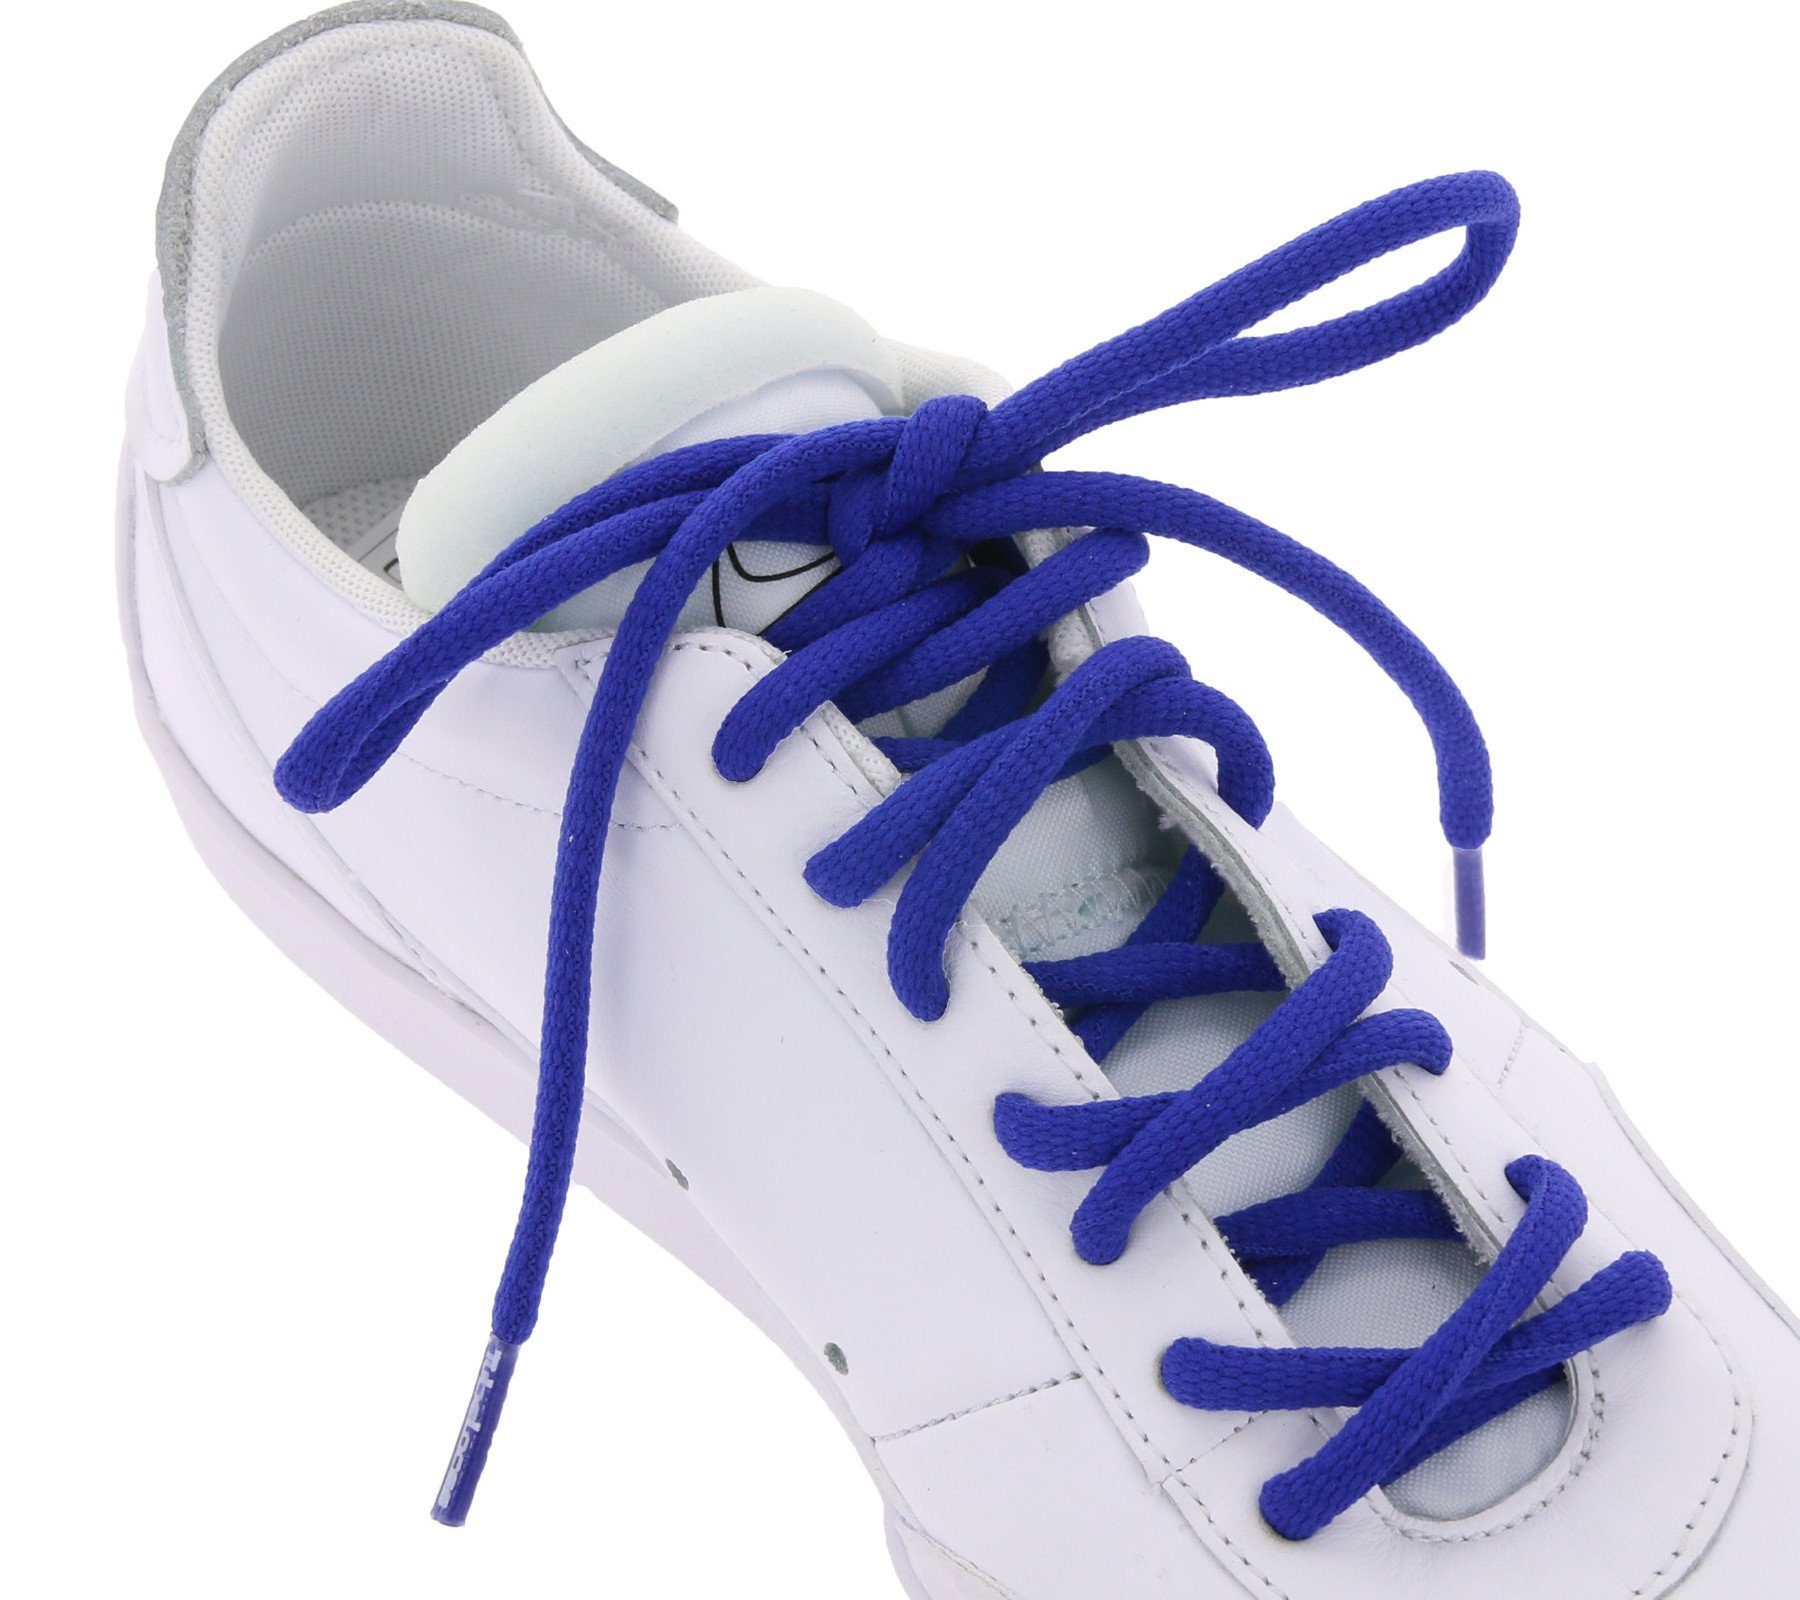 Tubelaces Schnürsenkel TubeLaces Schuhe Schuhband Schnürsenkel Schnürbänder angesagte top Dunkeblau